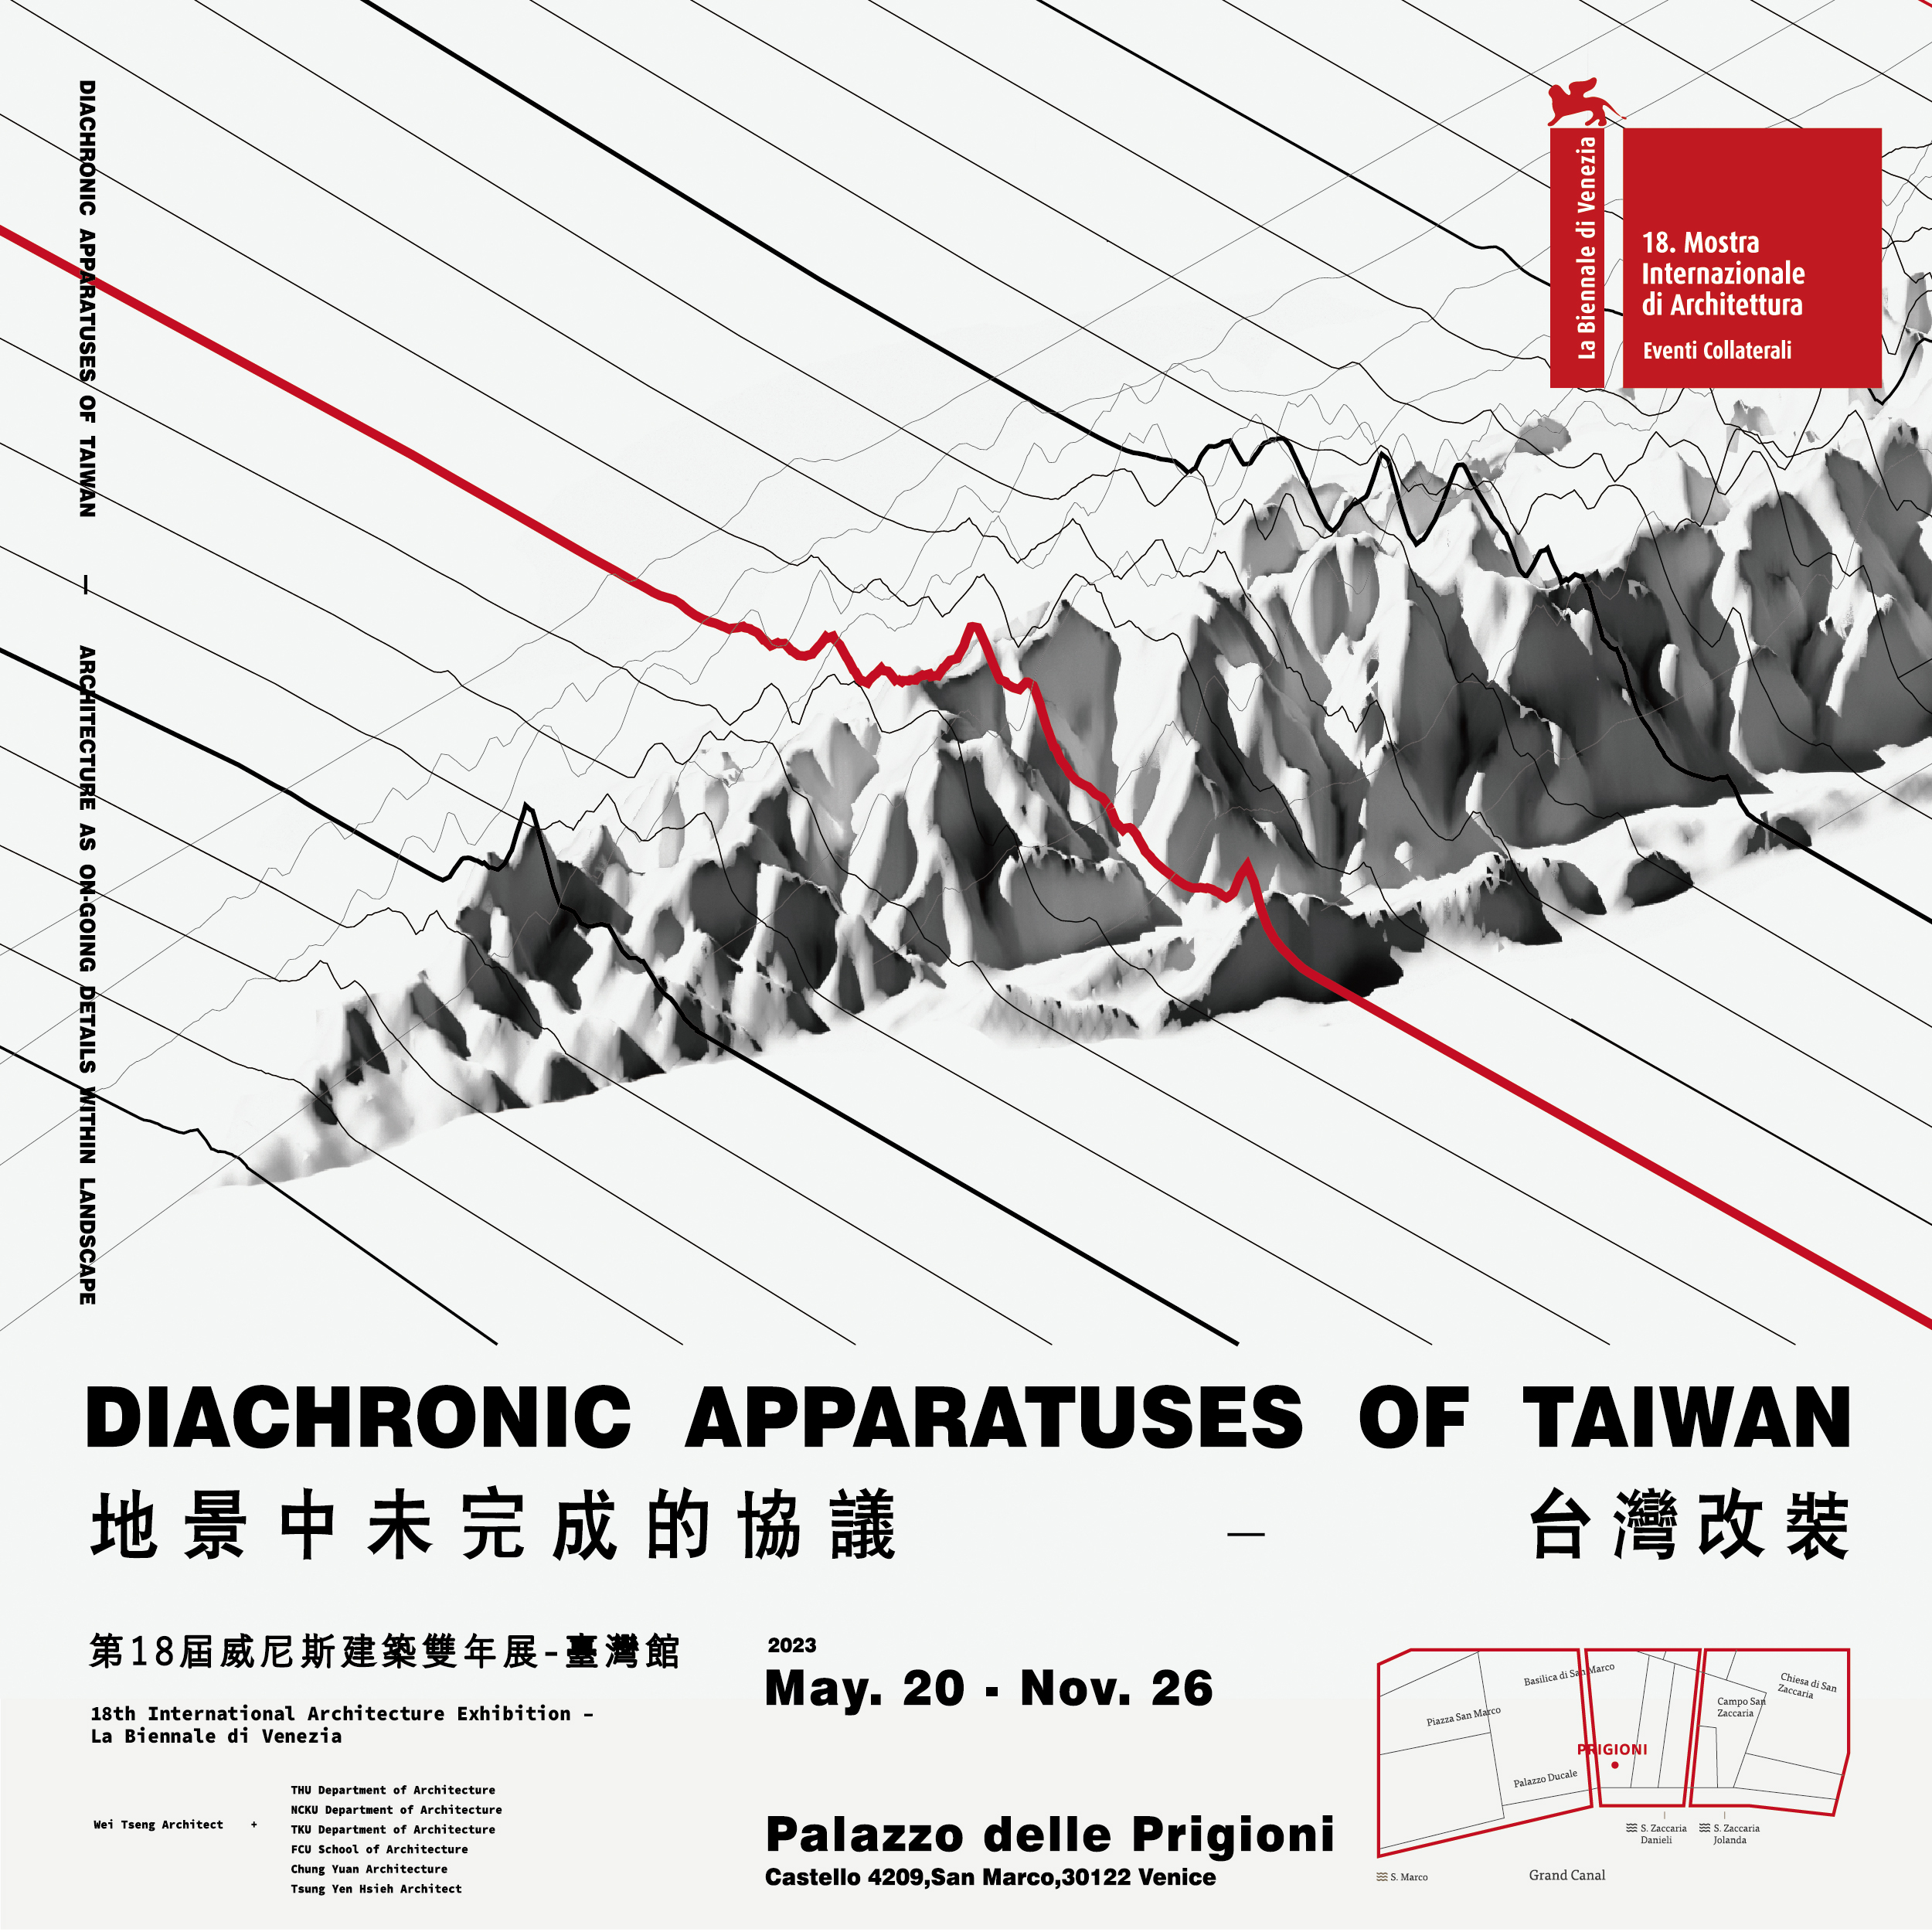 Taiwan Exhibition at 18th International Architecture Exhibition – La Biennale di Venezia Diachronic 